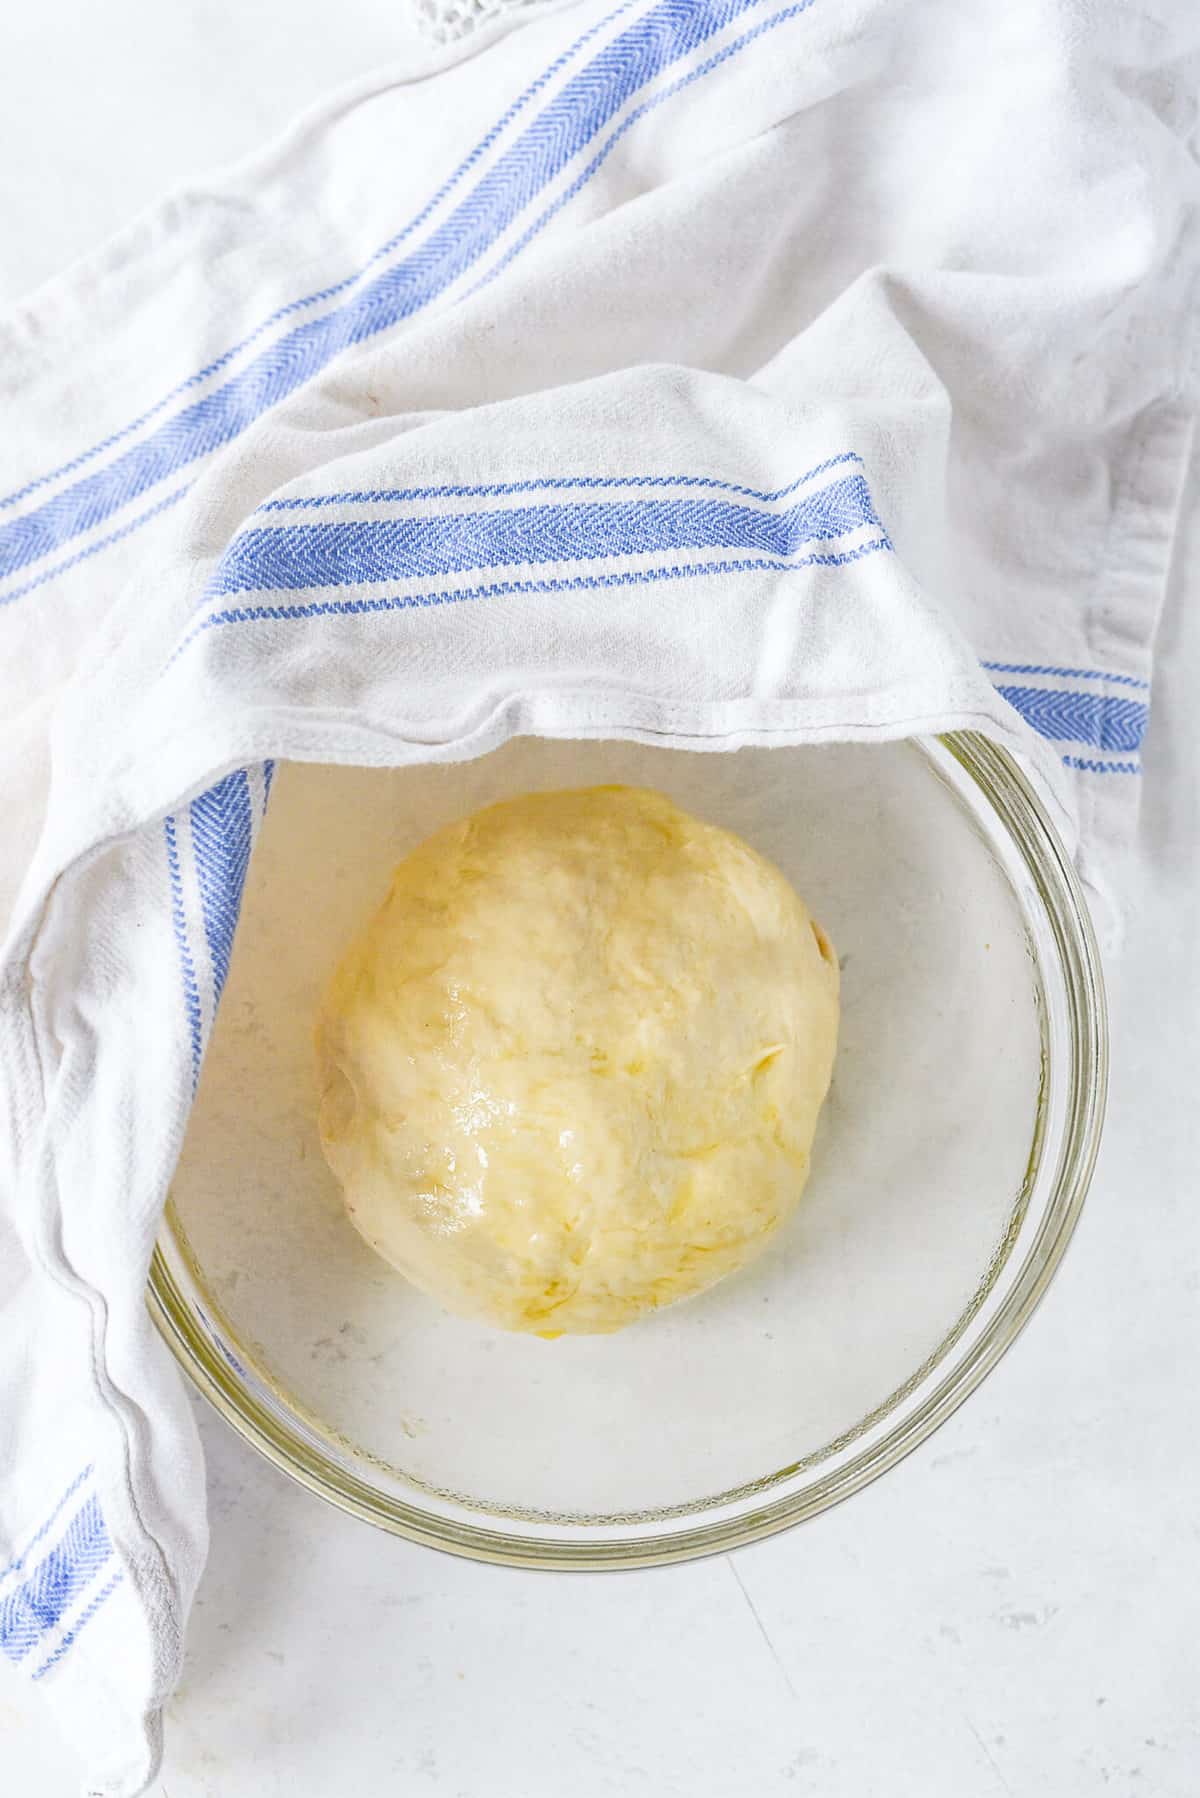 dough rising iun a bowl